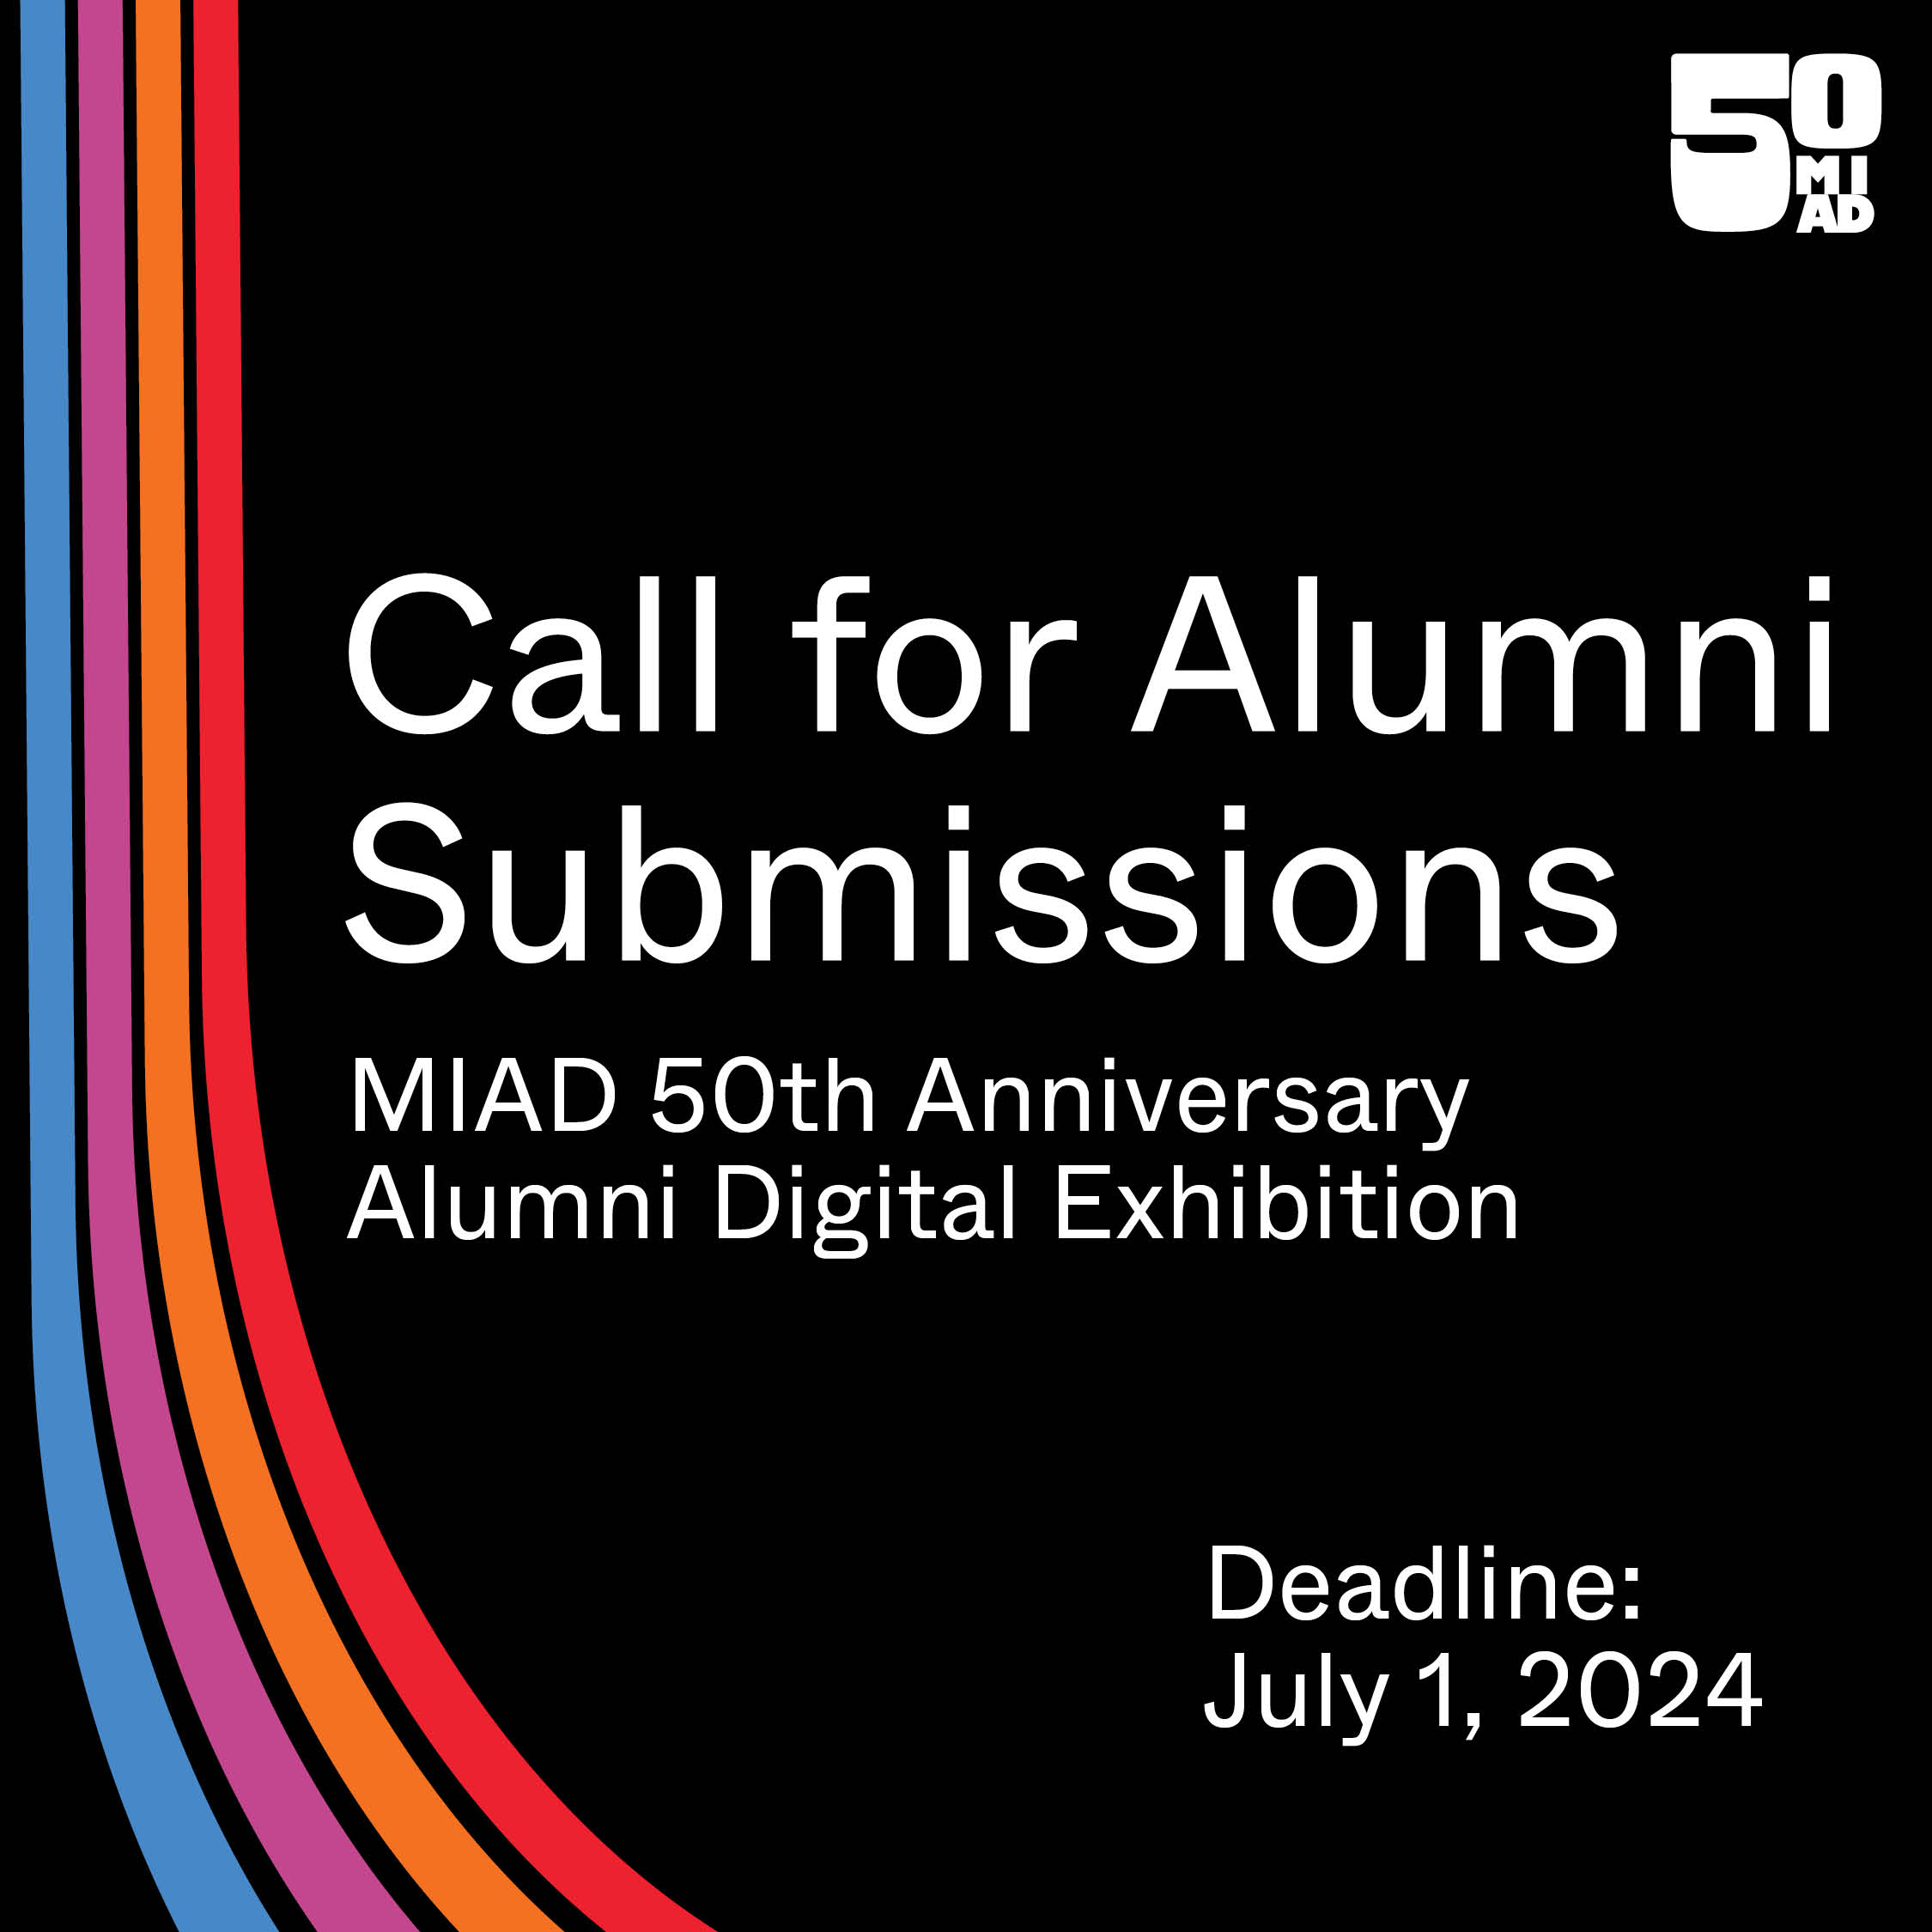 Call for Alumni Submissions: MIAD 50th Anniversary Alumni Digital Exhibition